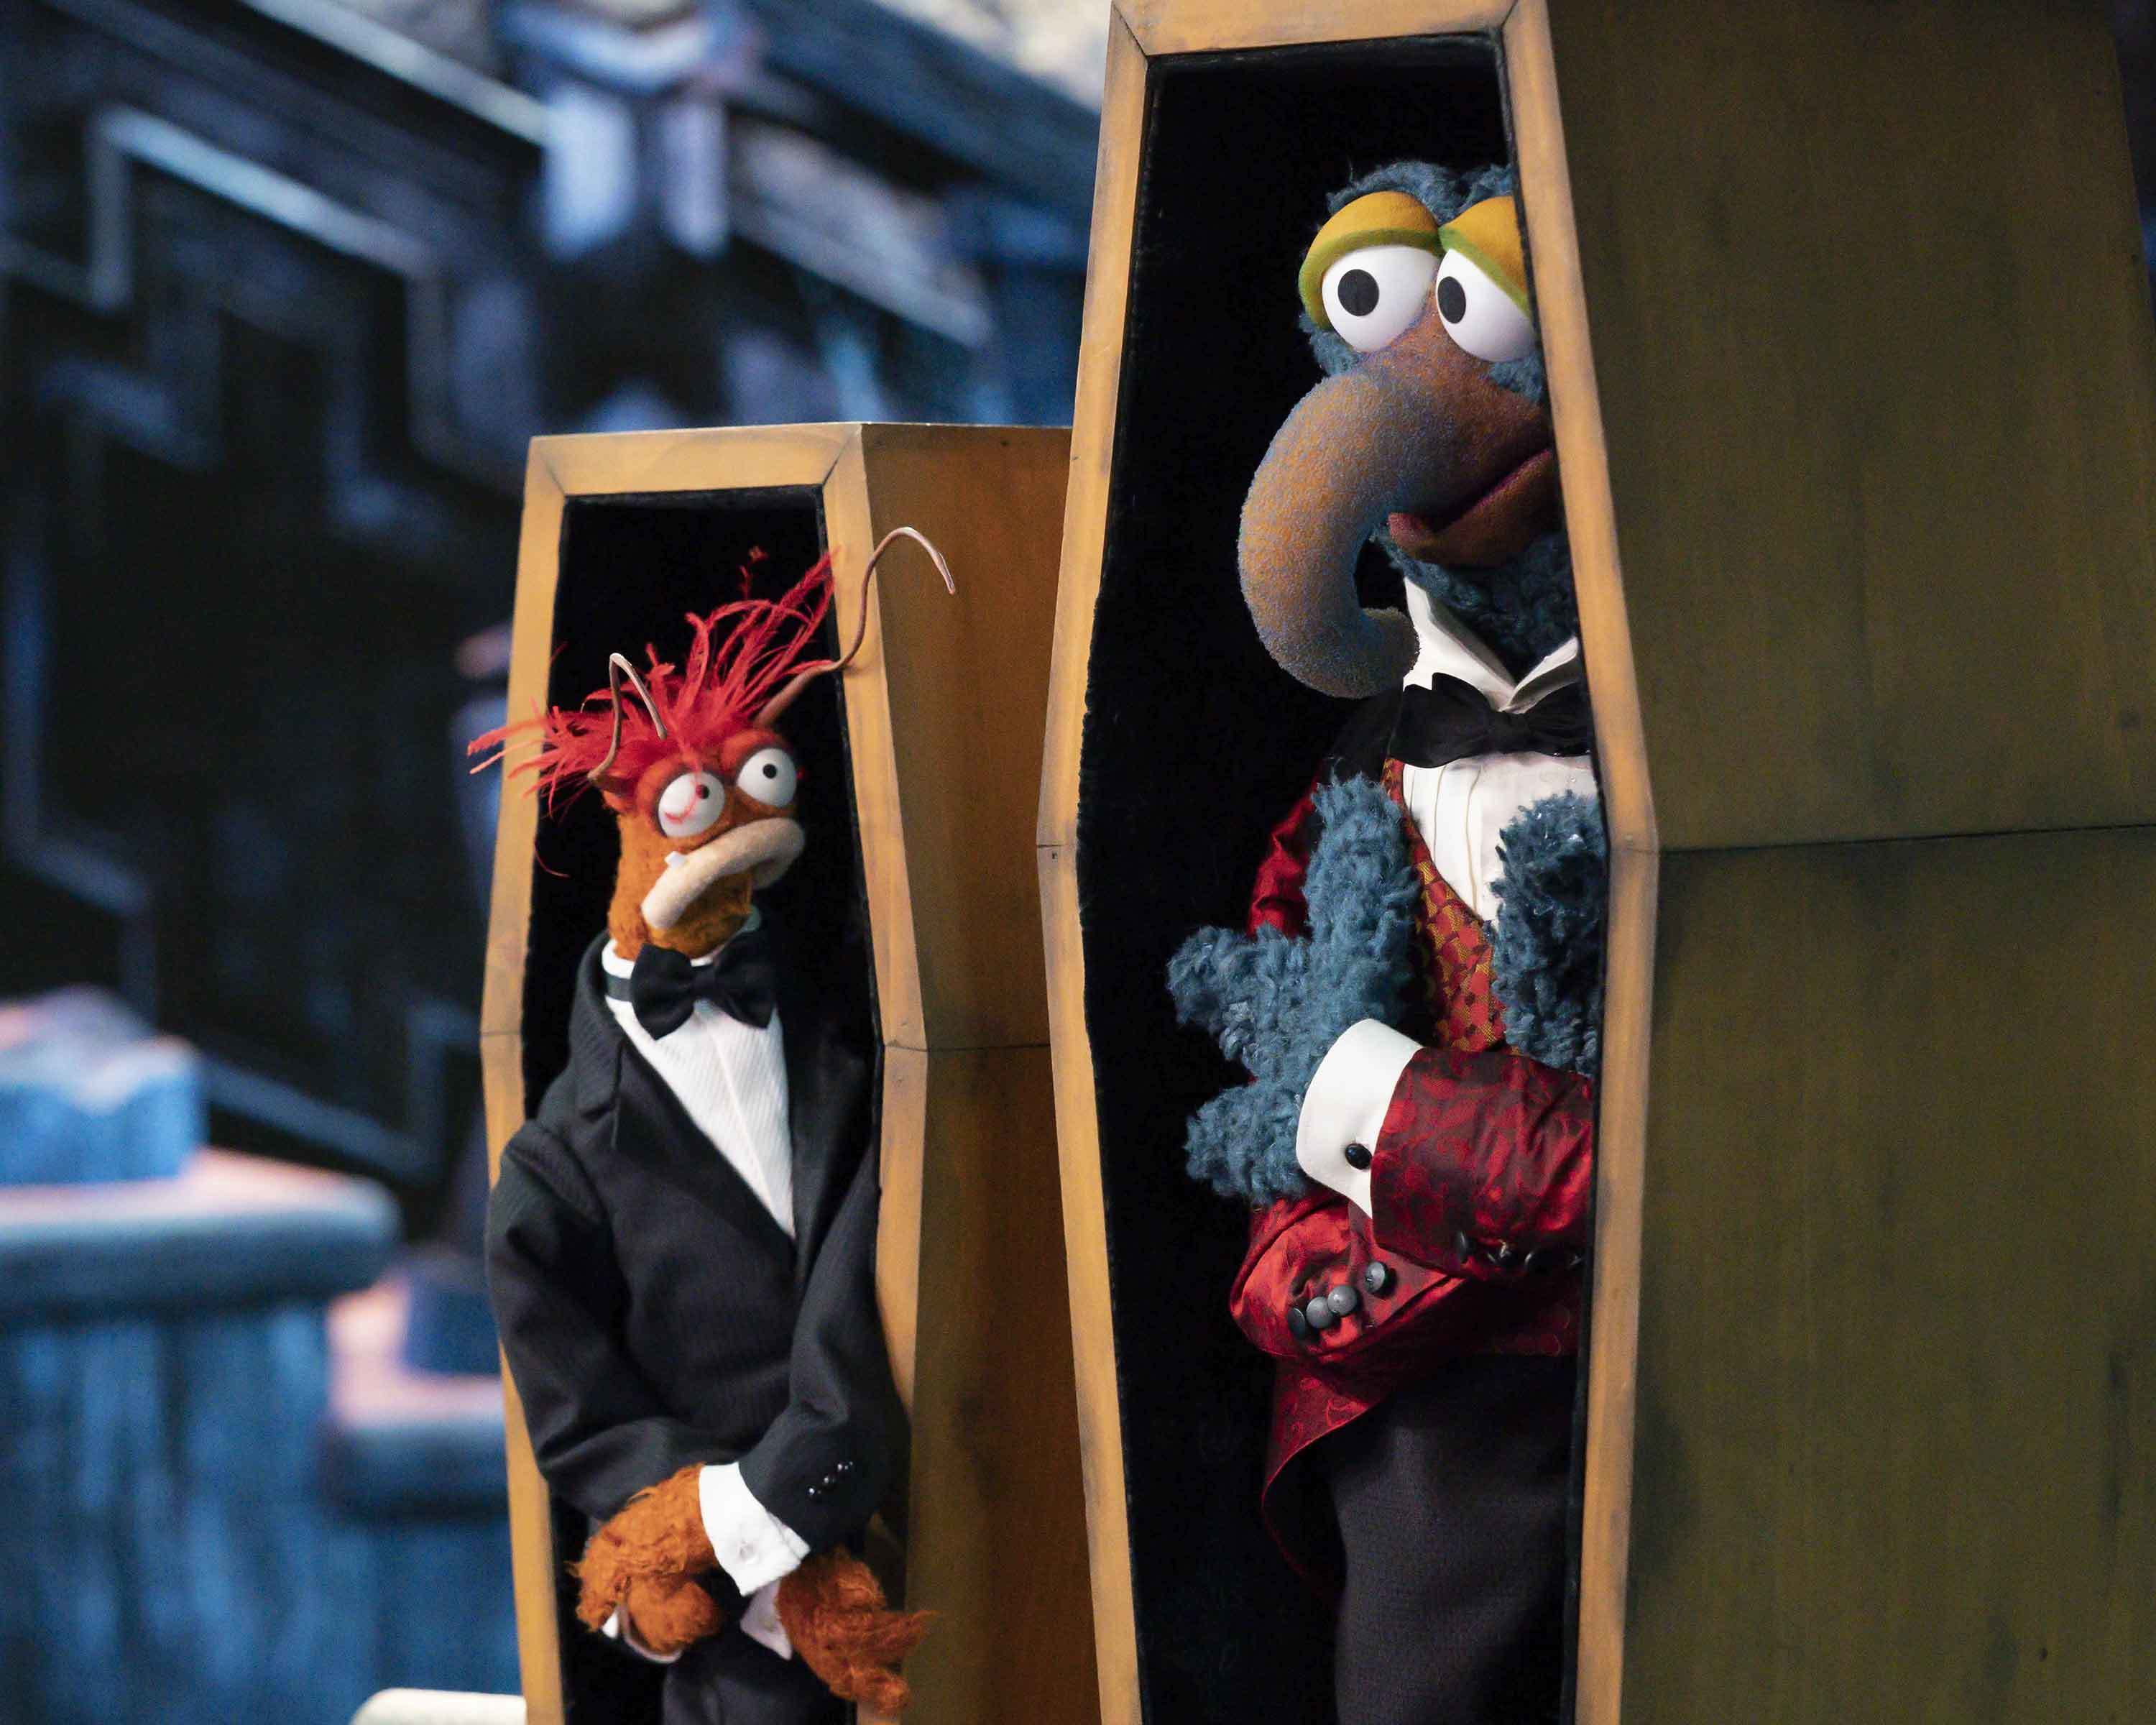 The Muppets Haunted Mansion - A Festa Aterrorizante